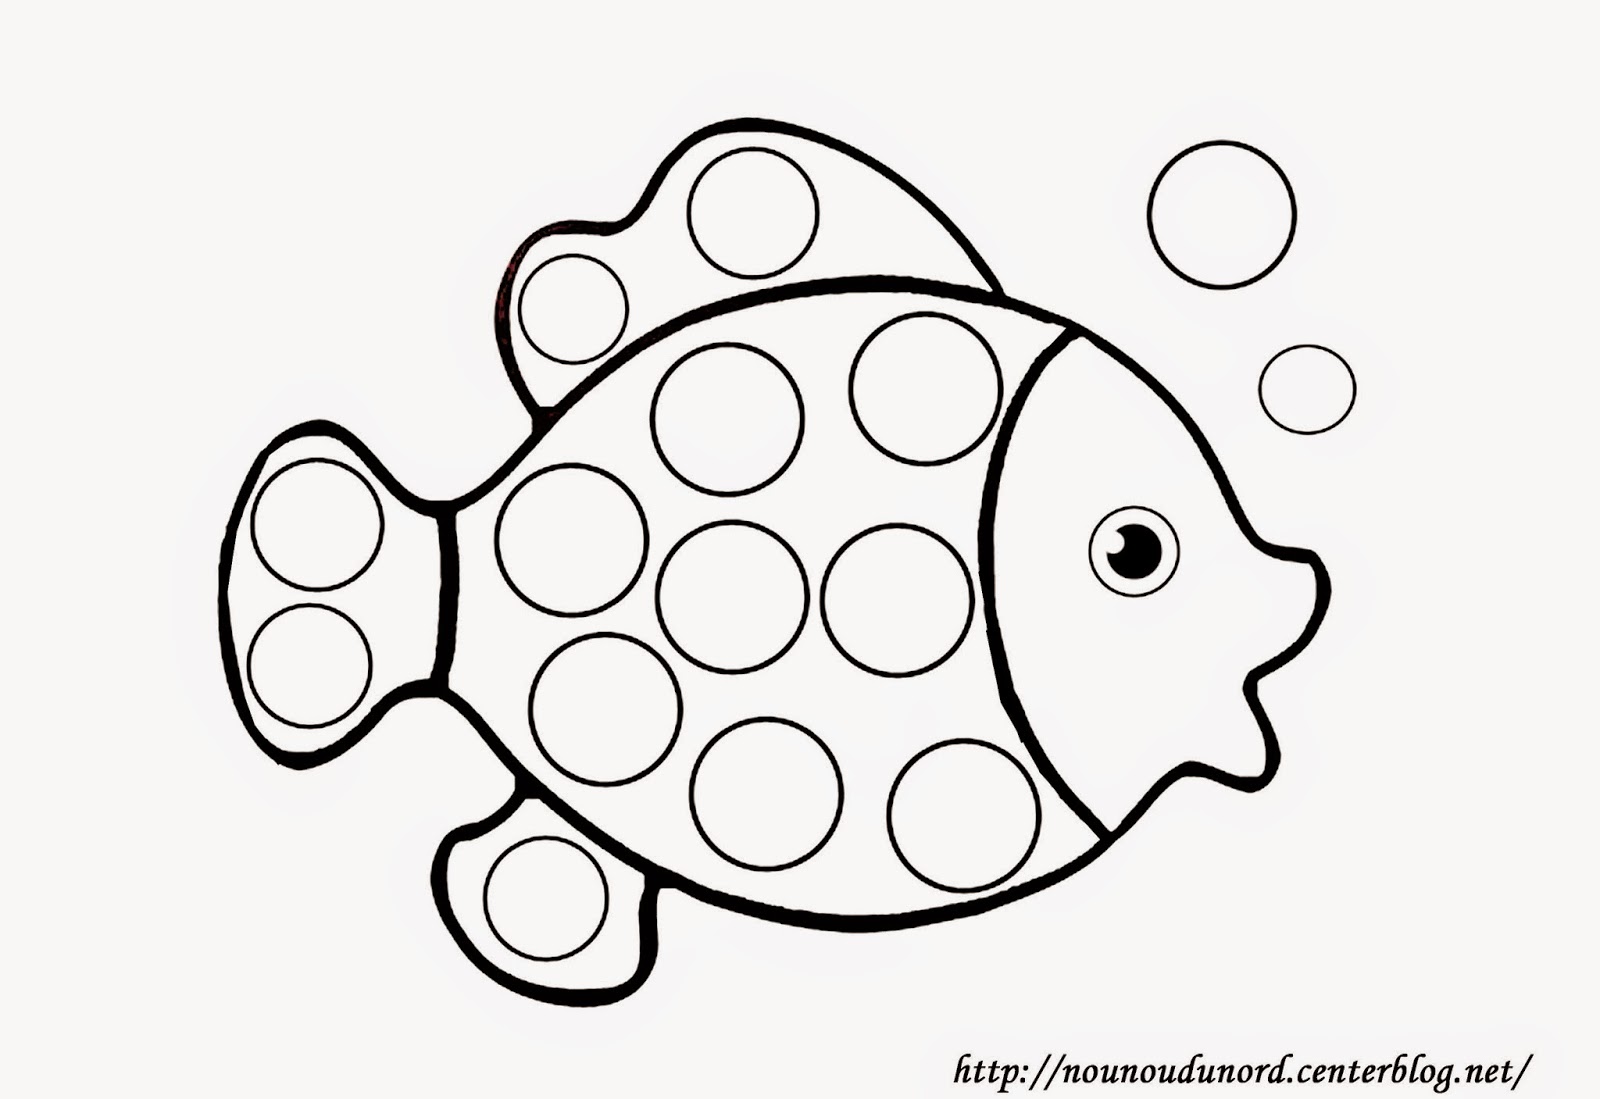 J ai imprimé le poisson ci dessous trouvé sur le blog de Nounoudunord et la miss s est amusée   le colorier et   coller des gommettes dans les ronds